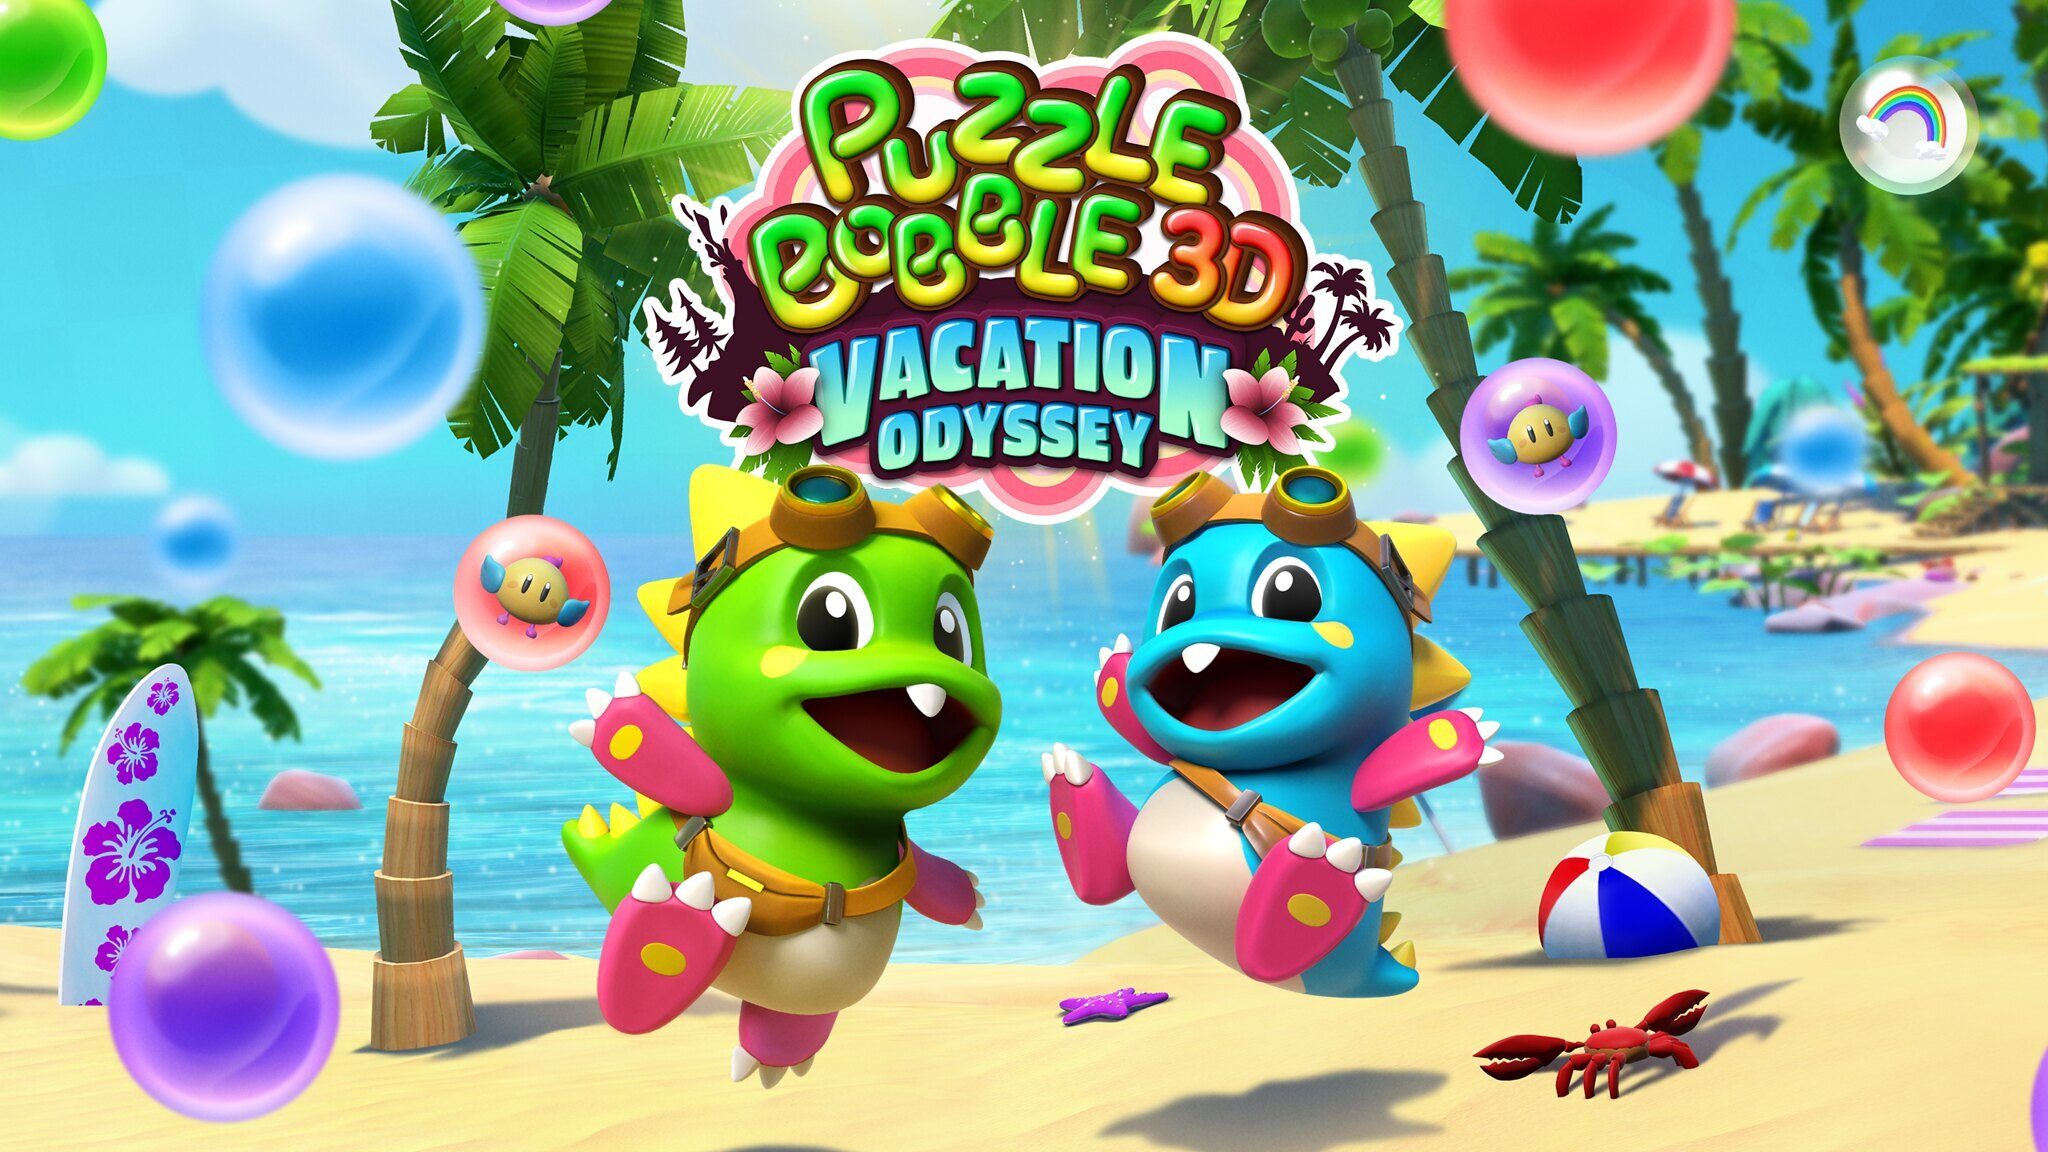 Cette année, Puzzle Bobble 3D: Vacation Odyssey va offrir une nouvelle dimension au jeu de puzzle sur PS VR, PS4 et PS5